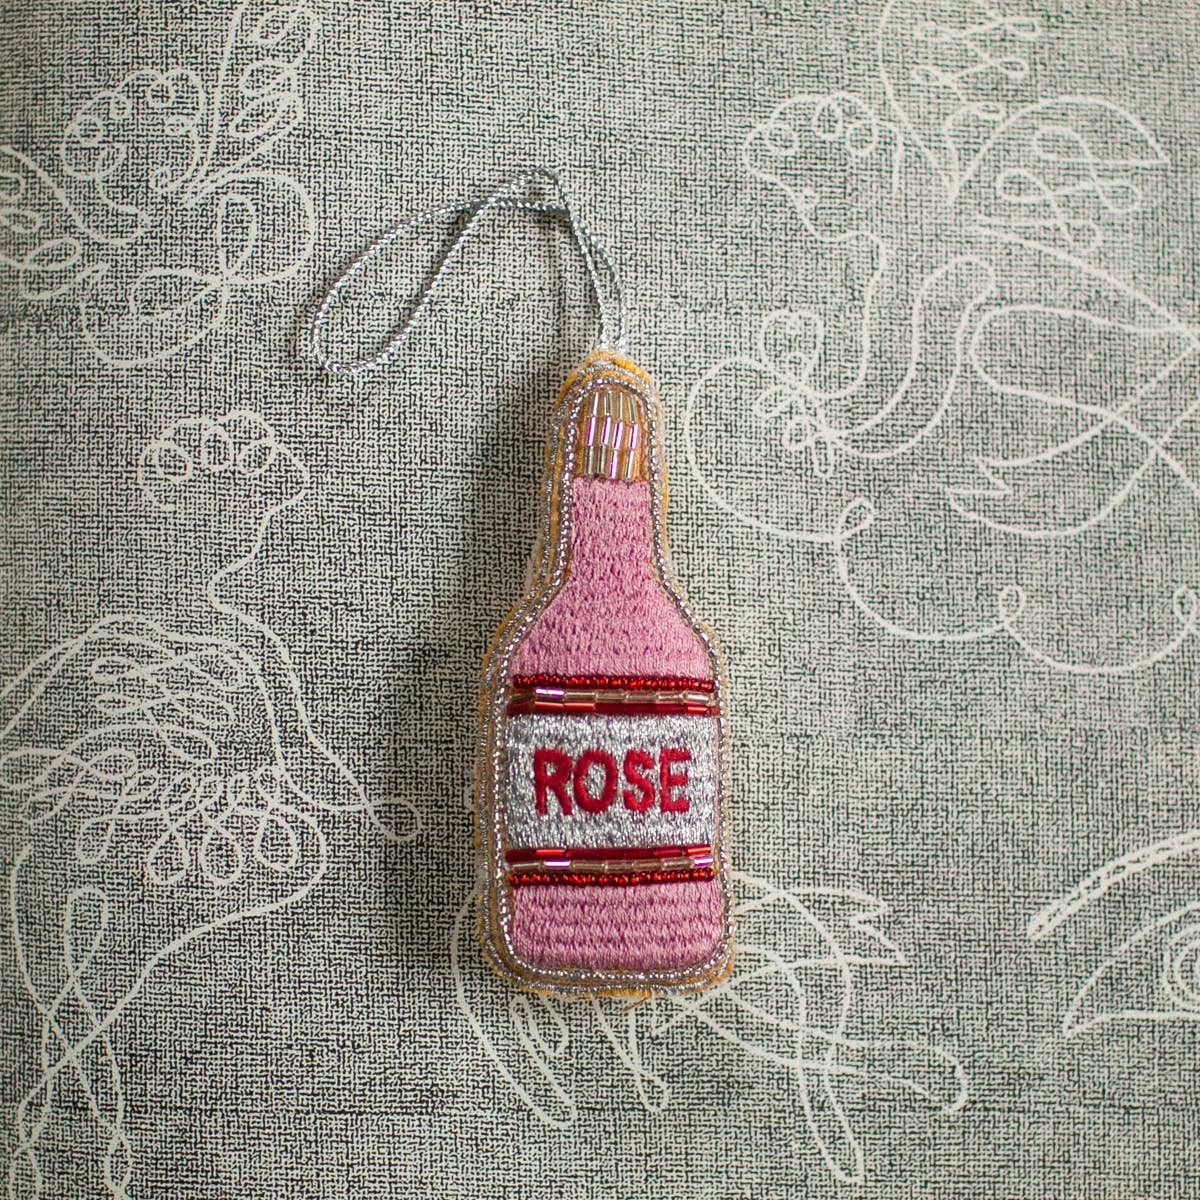 Rose Bottle, Soft Cotton Ornament